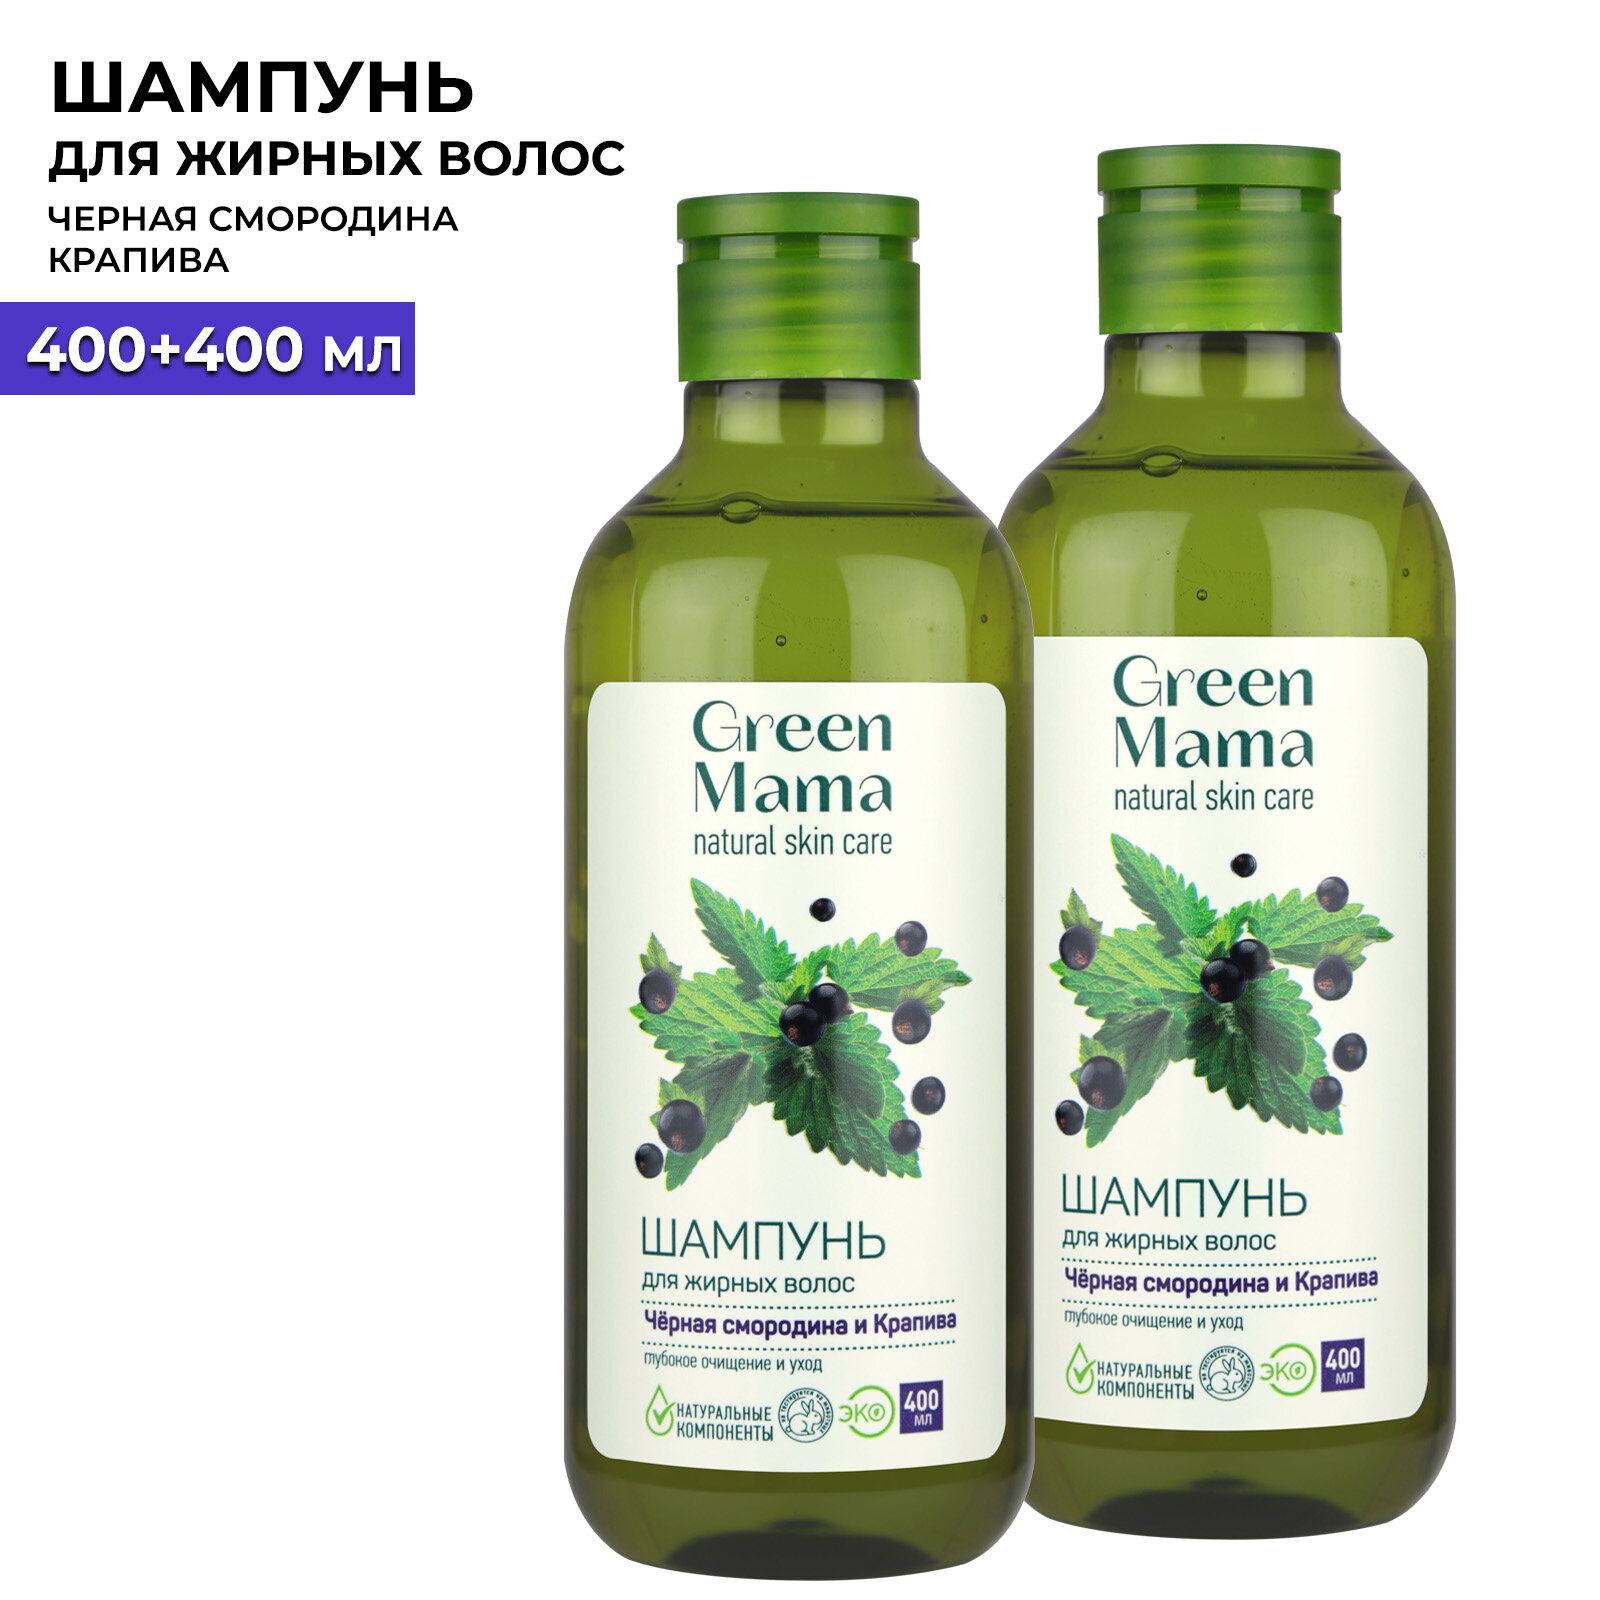 Шампунь для жирных волос GREEN MAMA черная смородина и крапива 400 мл - 2 шт